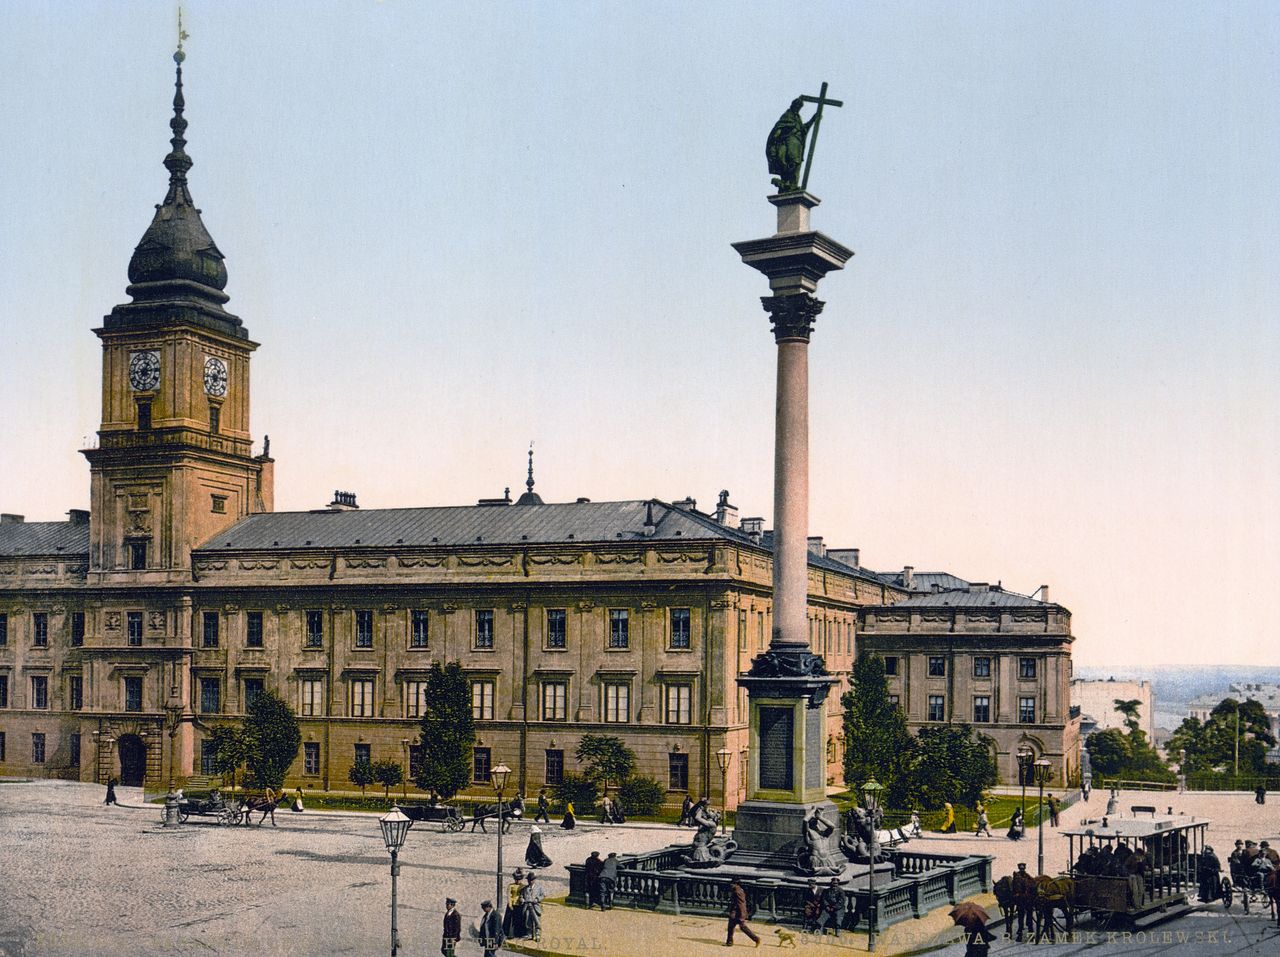 Zamek Królewski w Warszawie około roku 1900 